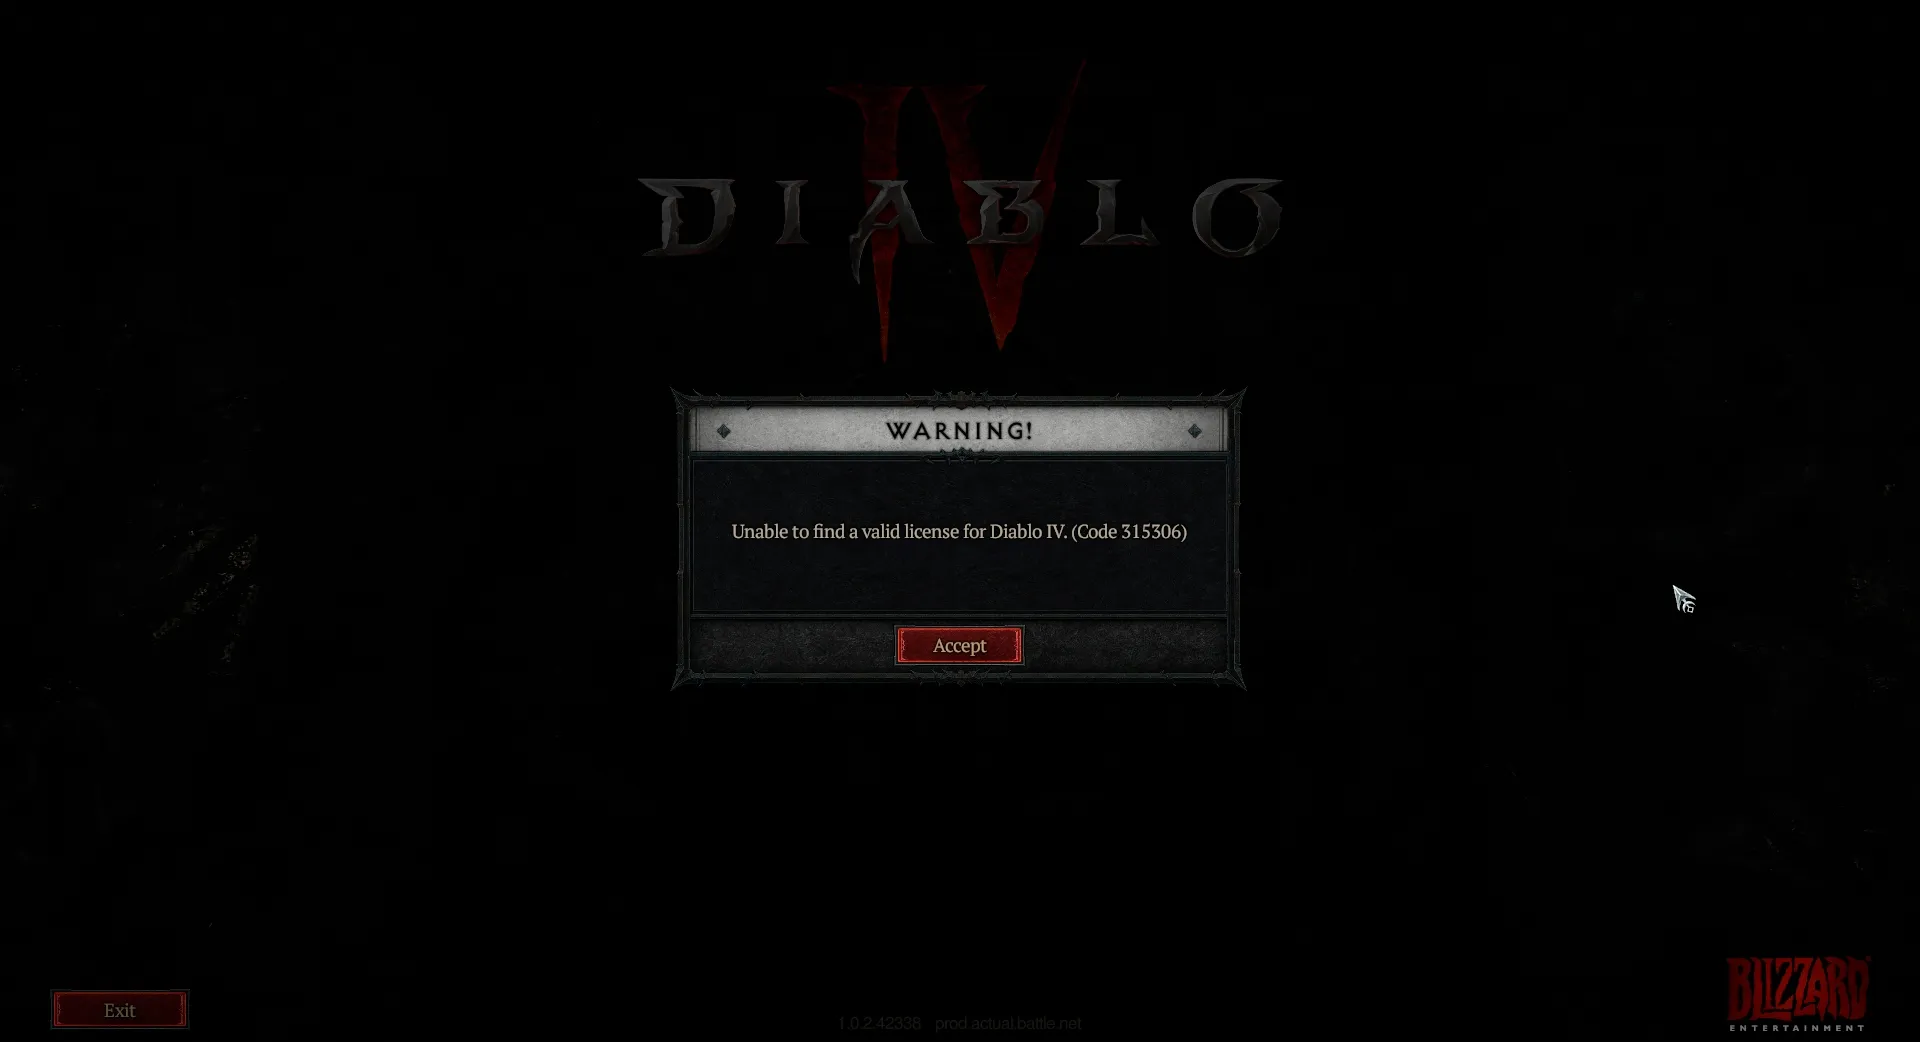 Obrázok zobrazujúci kód chyby 315306, ktorý hovorí, že Diablo 4 je